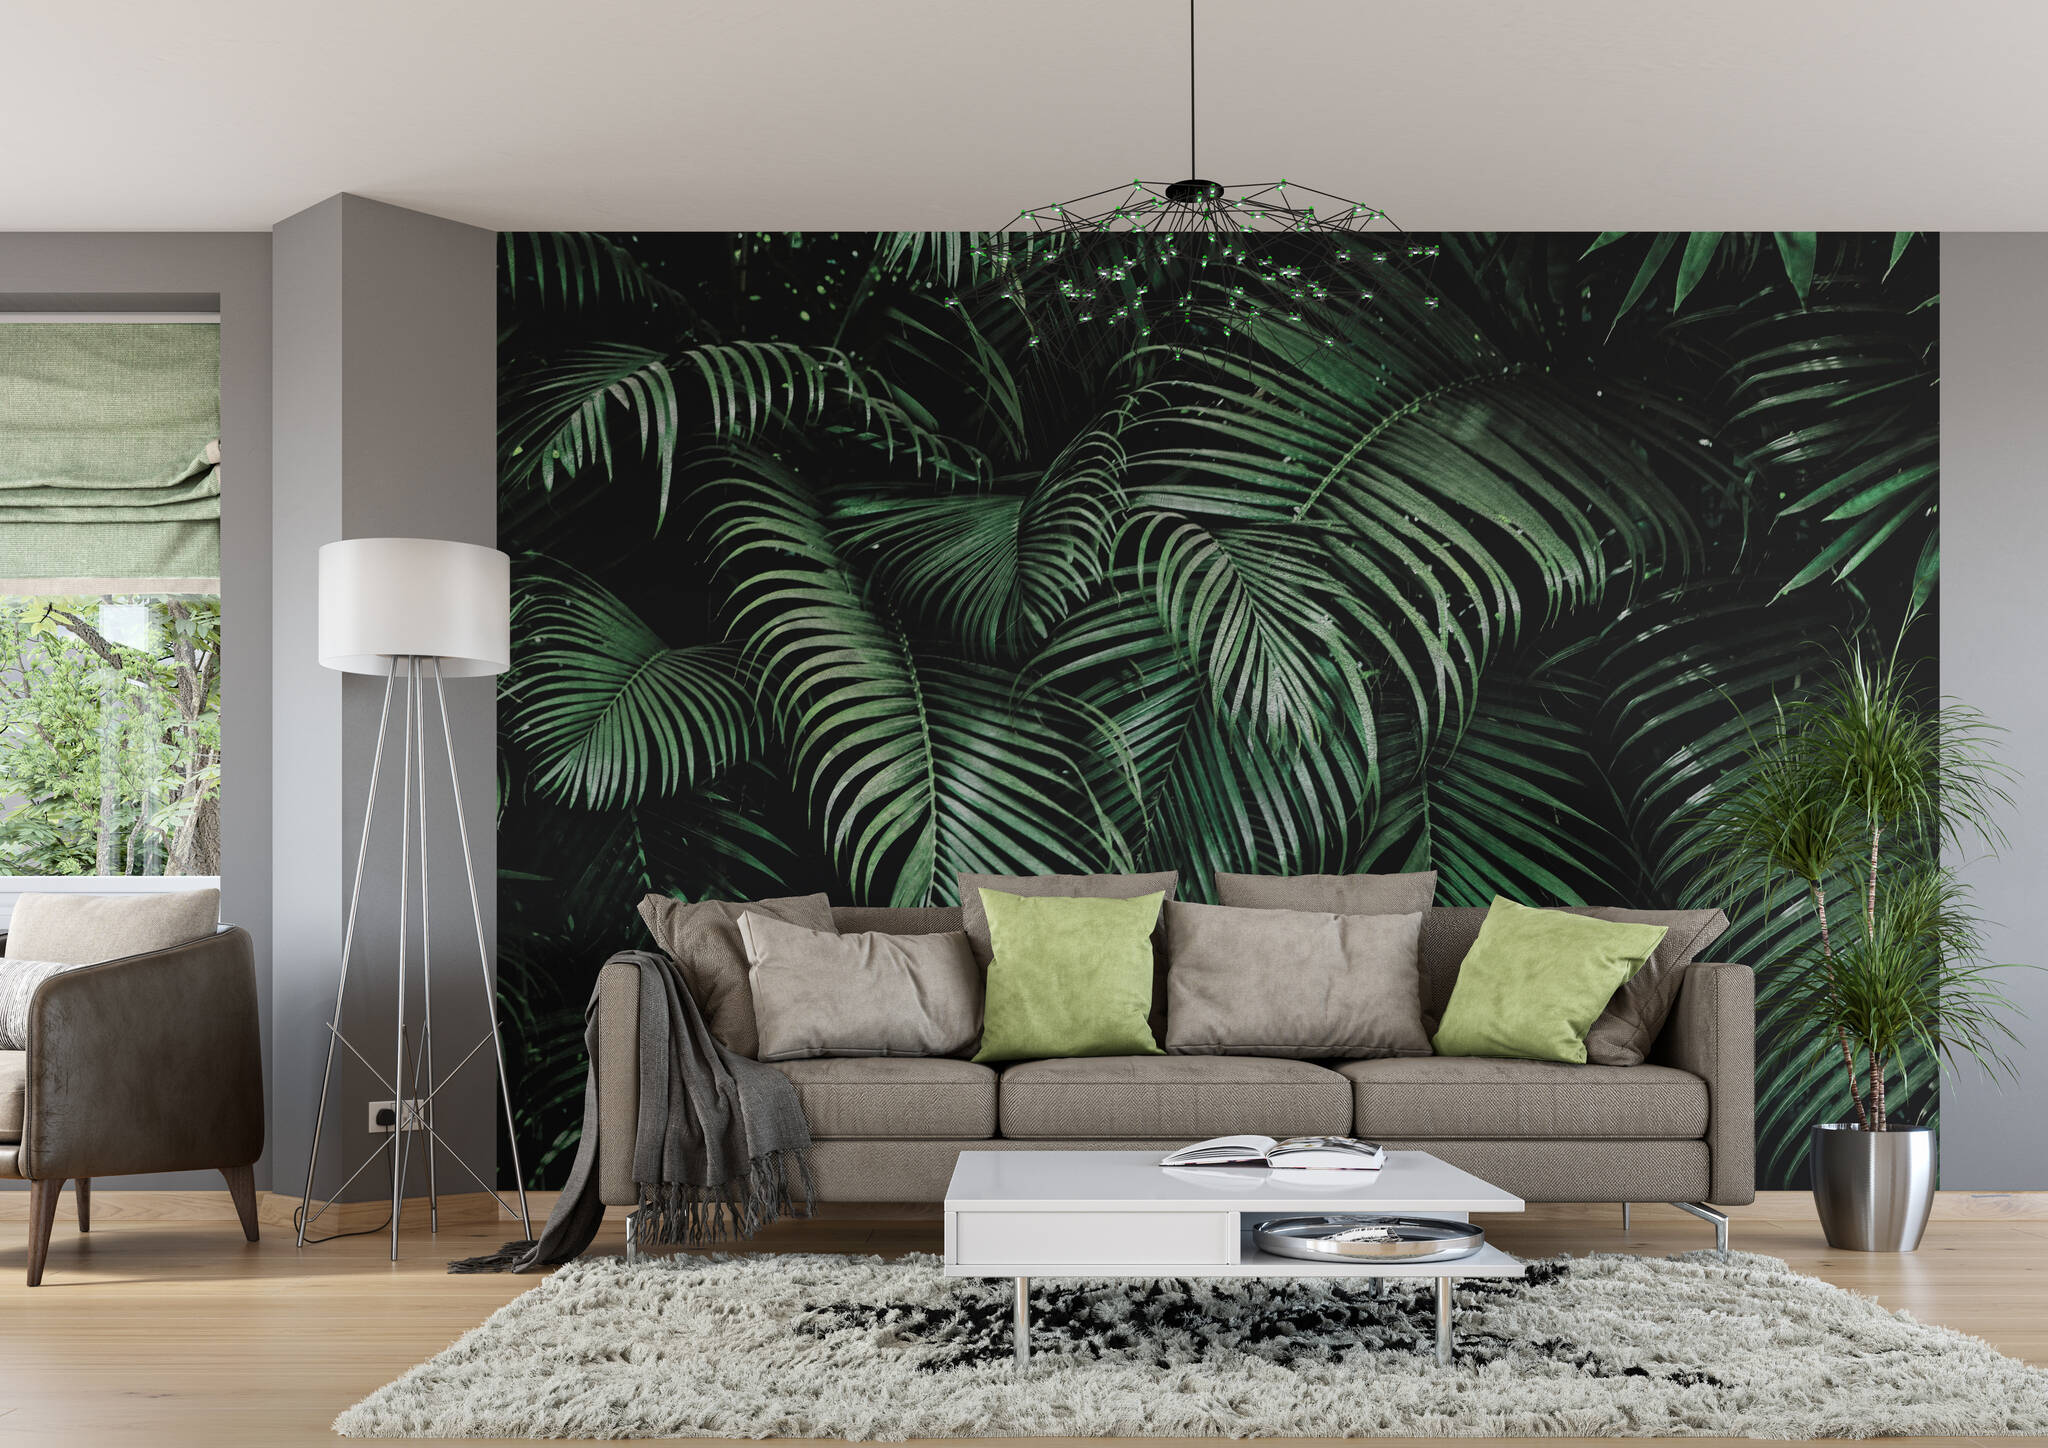 Wohnzimmer mit Fototapete - Grüne Palmenblätter mit 3D-Effekt in raumfüllendem Zoom